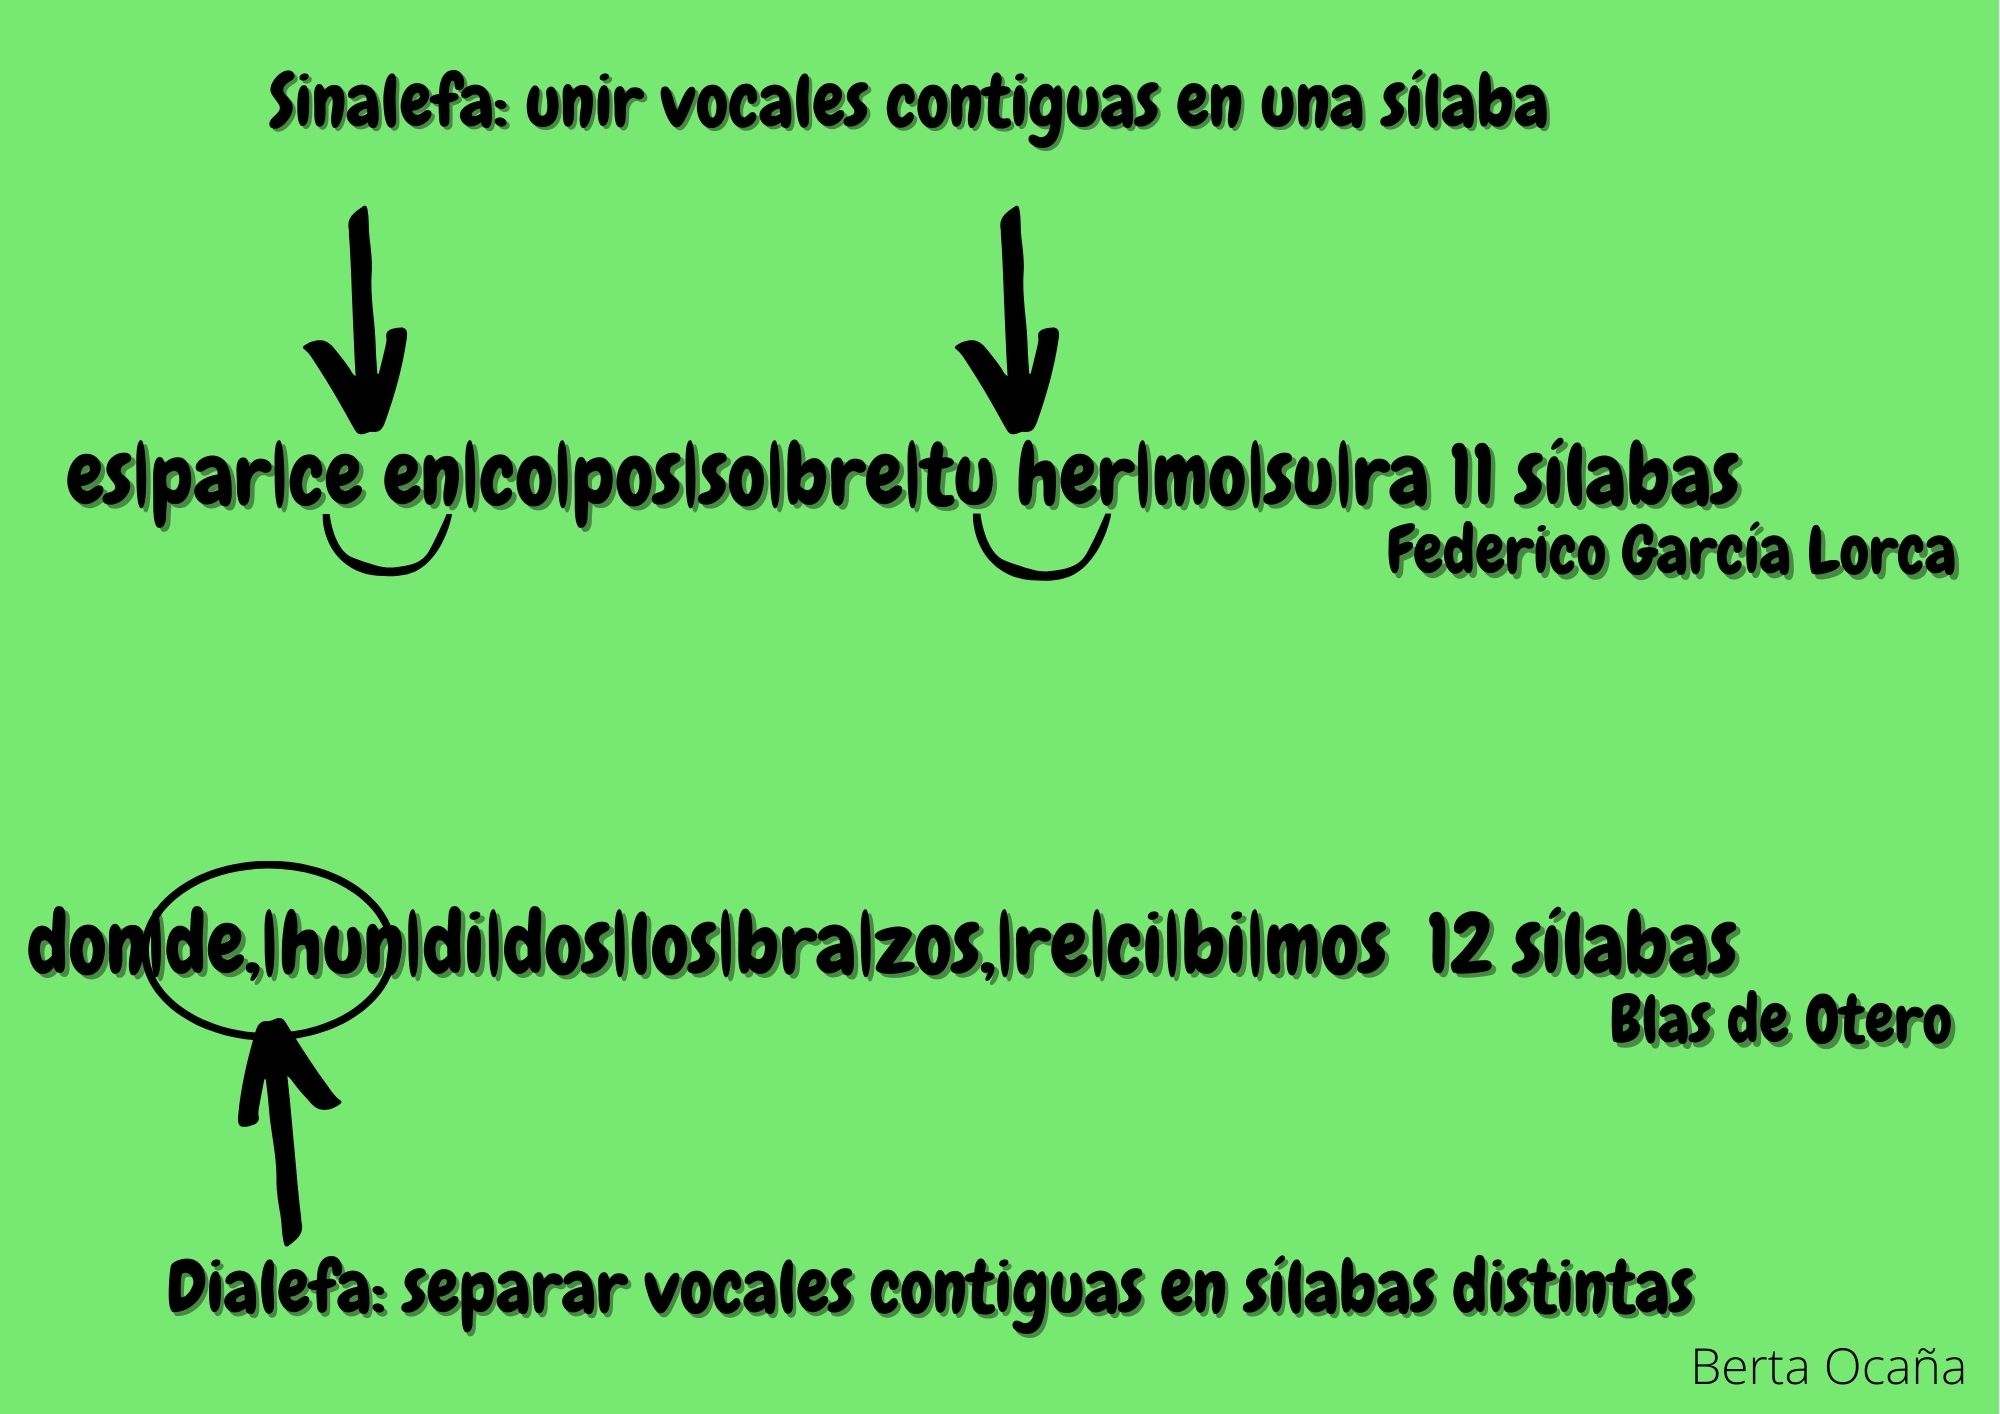 Infografía con ejemplo sobre la sinalefa y la dialefa